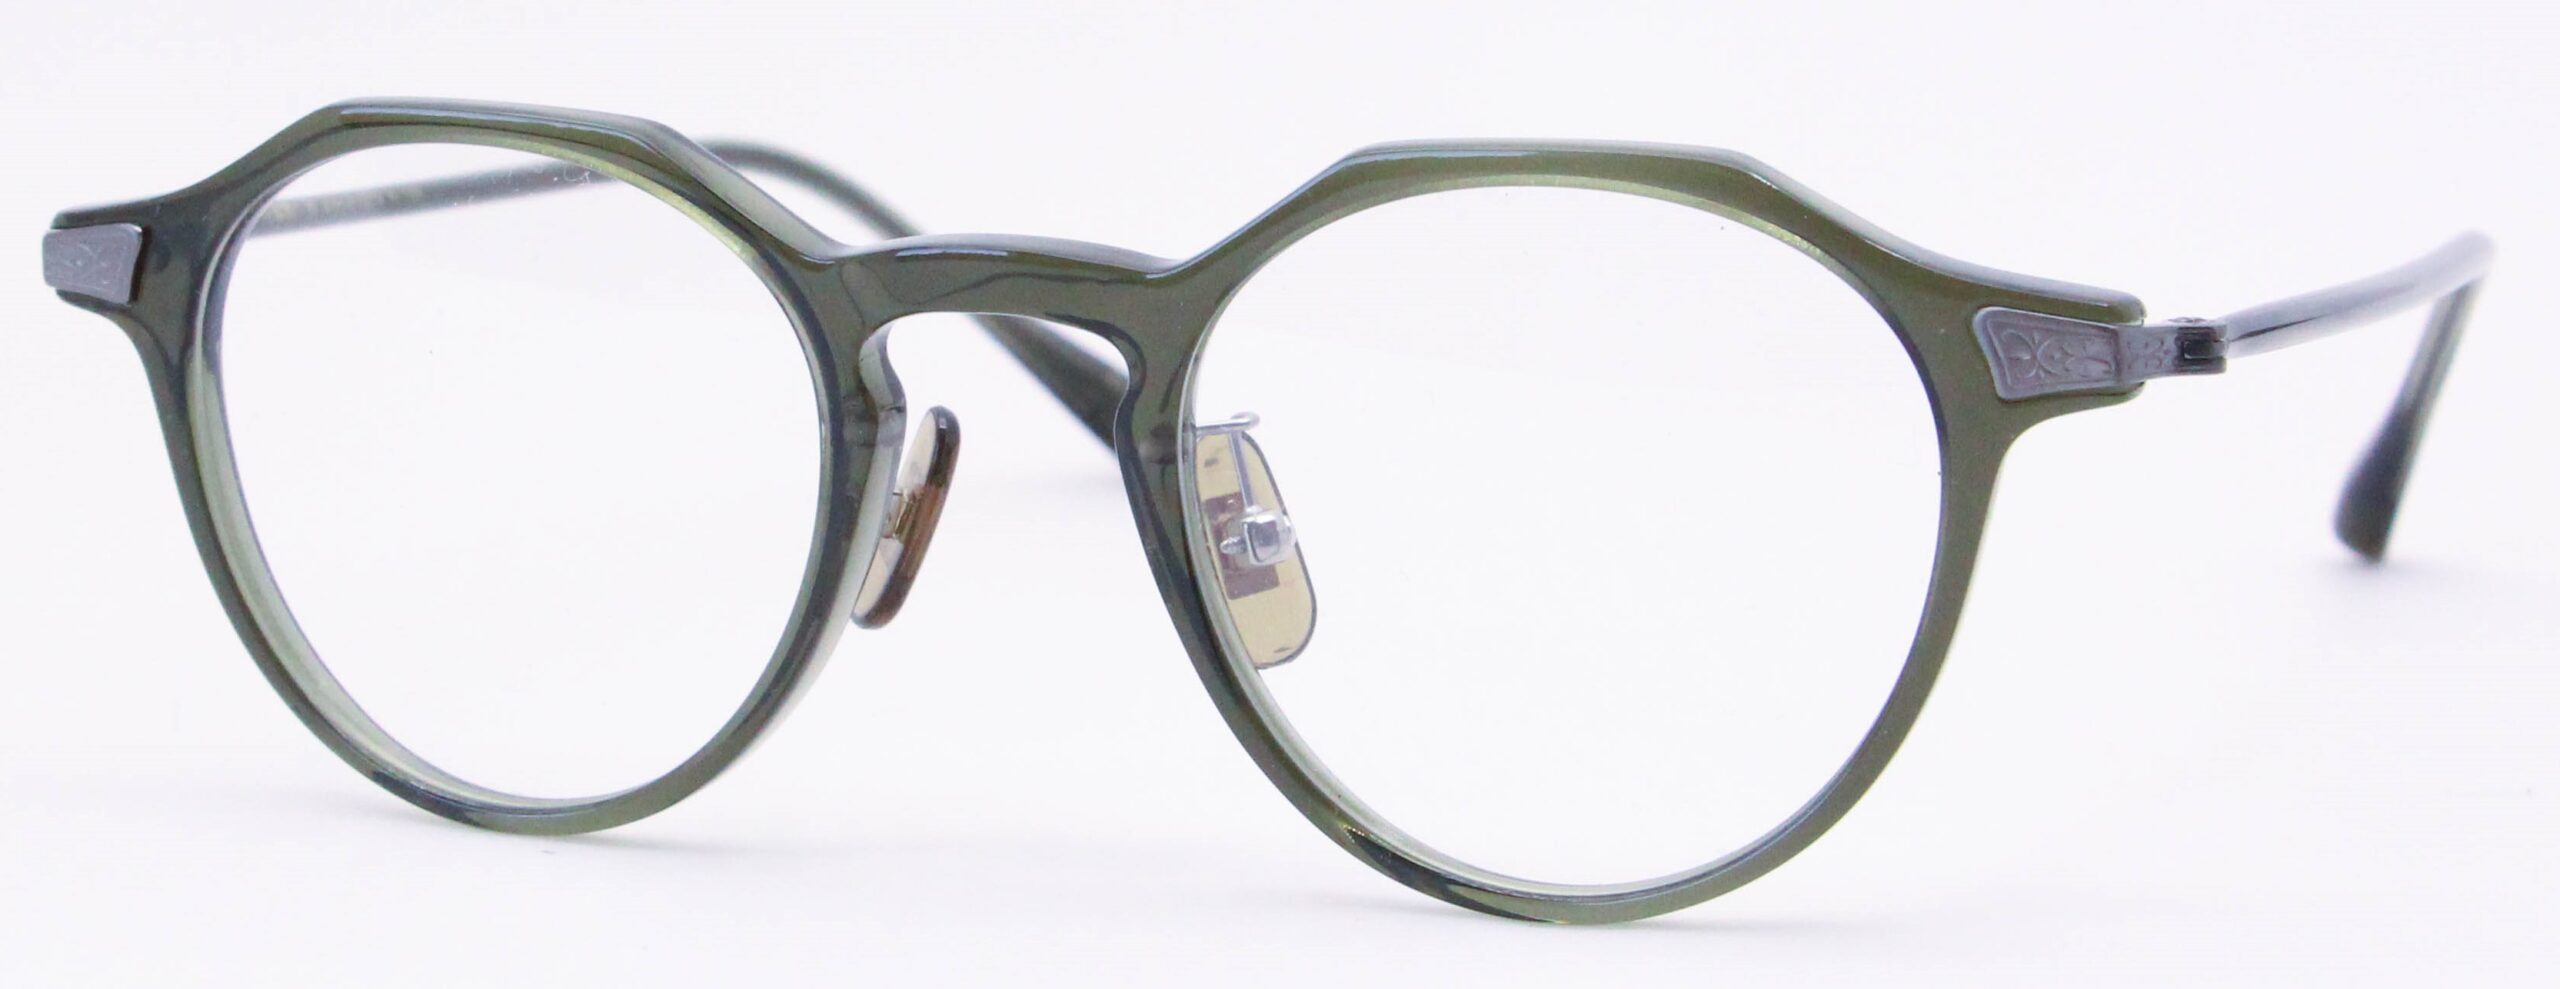 眼鏡のカラータイプC-5 Green/Gray